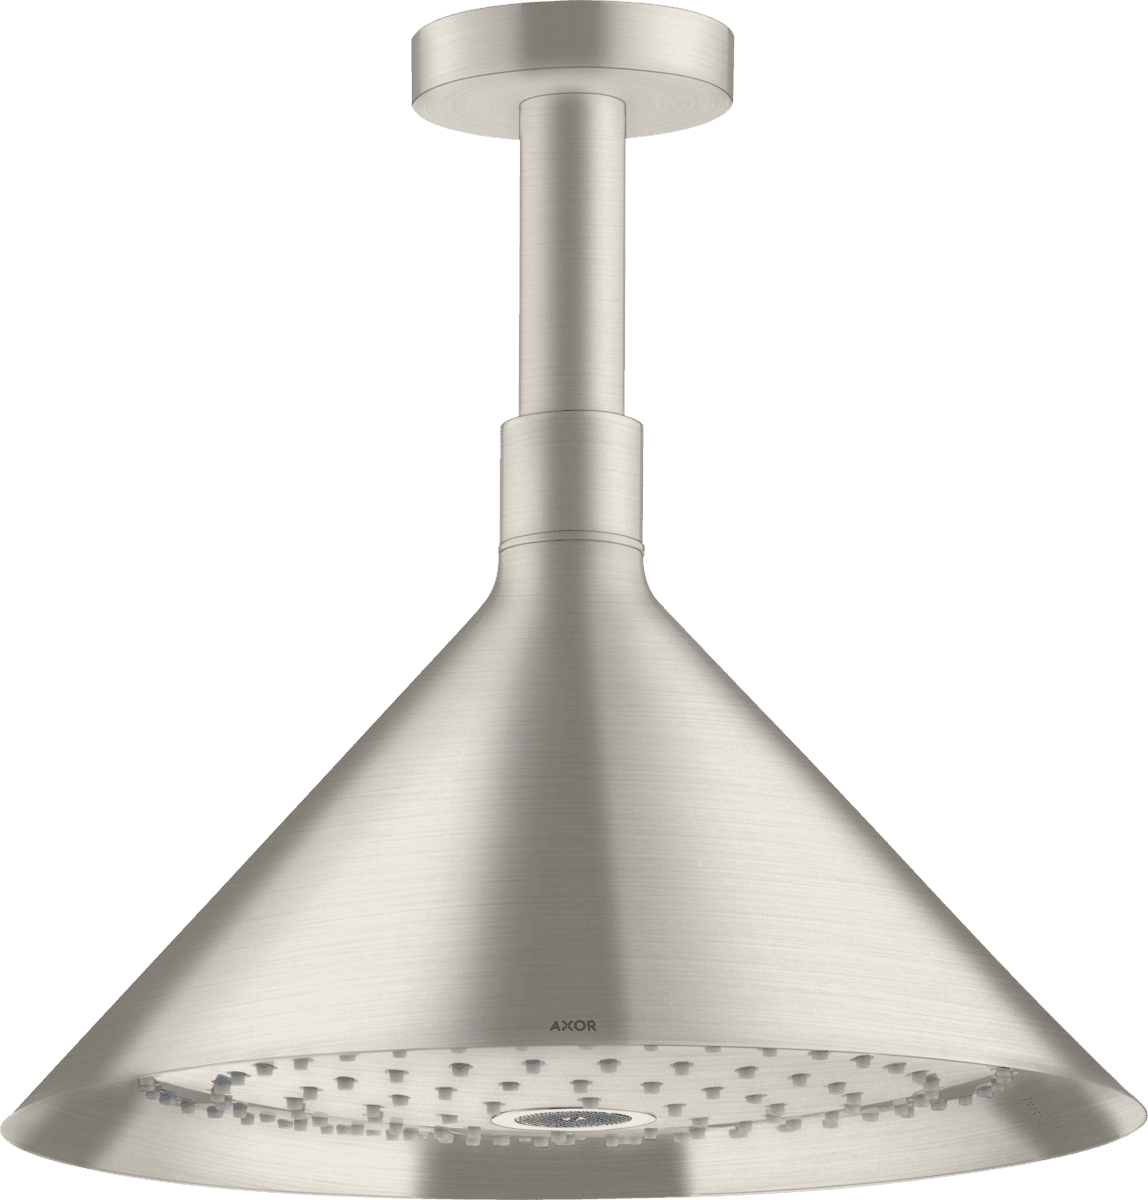 εικόνα του HANSGROHE AXOR Showers/Front Overhead shower 240 2jet with ceiling connector #26022800 - Stainless Steel Optic